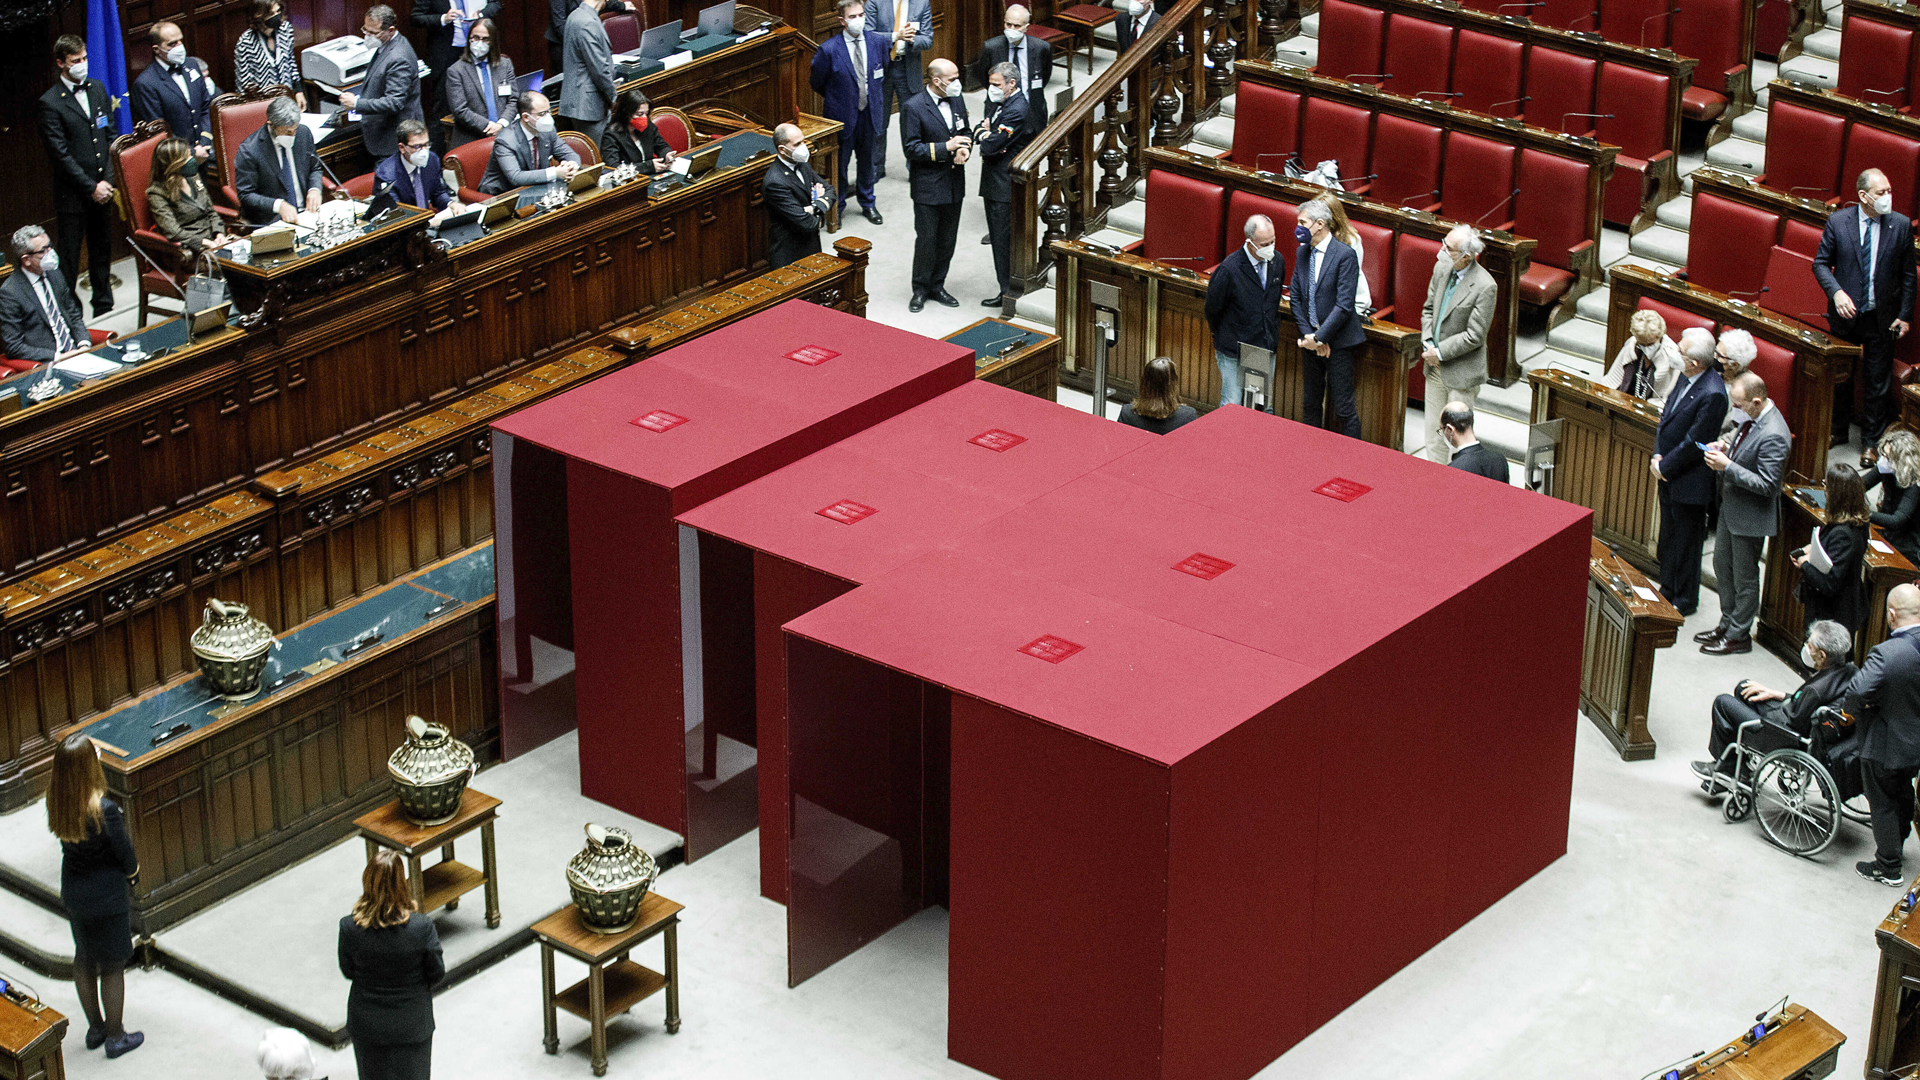 Blick auf die neuen Wahlkabinen mit Corona-Vorkehrungen während des ersten Wahlgangs im italienischen Parlament. | picture alliance/dpa/LaPresse/AP